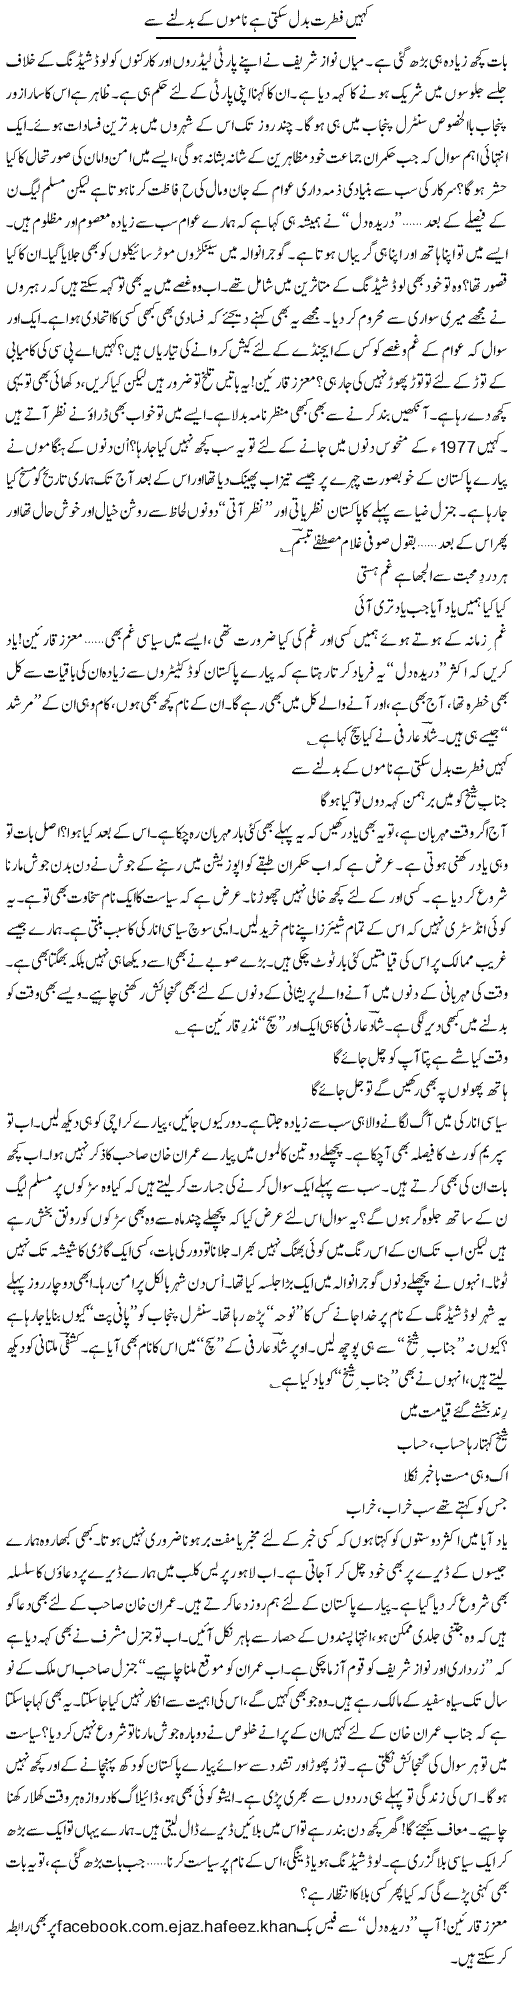 Nawaz and Imran Express Column Ijaz Abdul Hafeez 9 October 2011